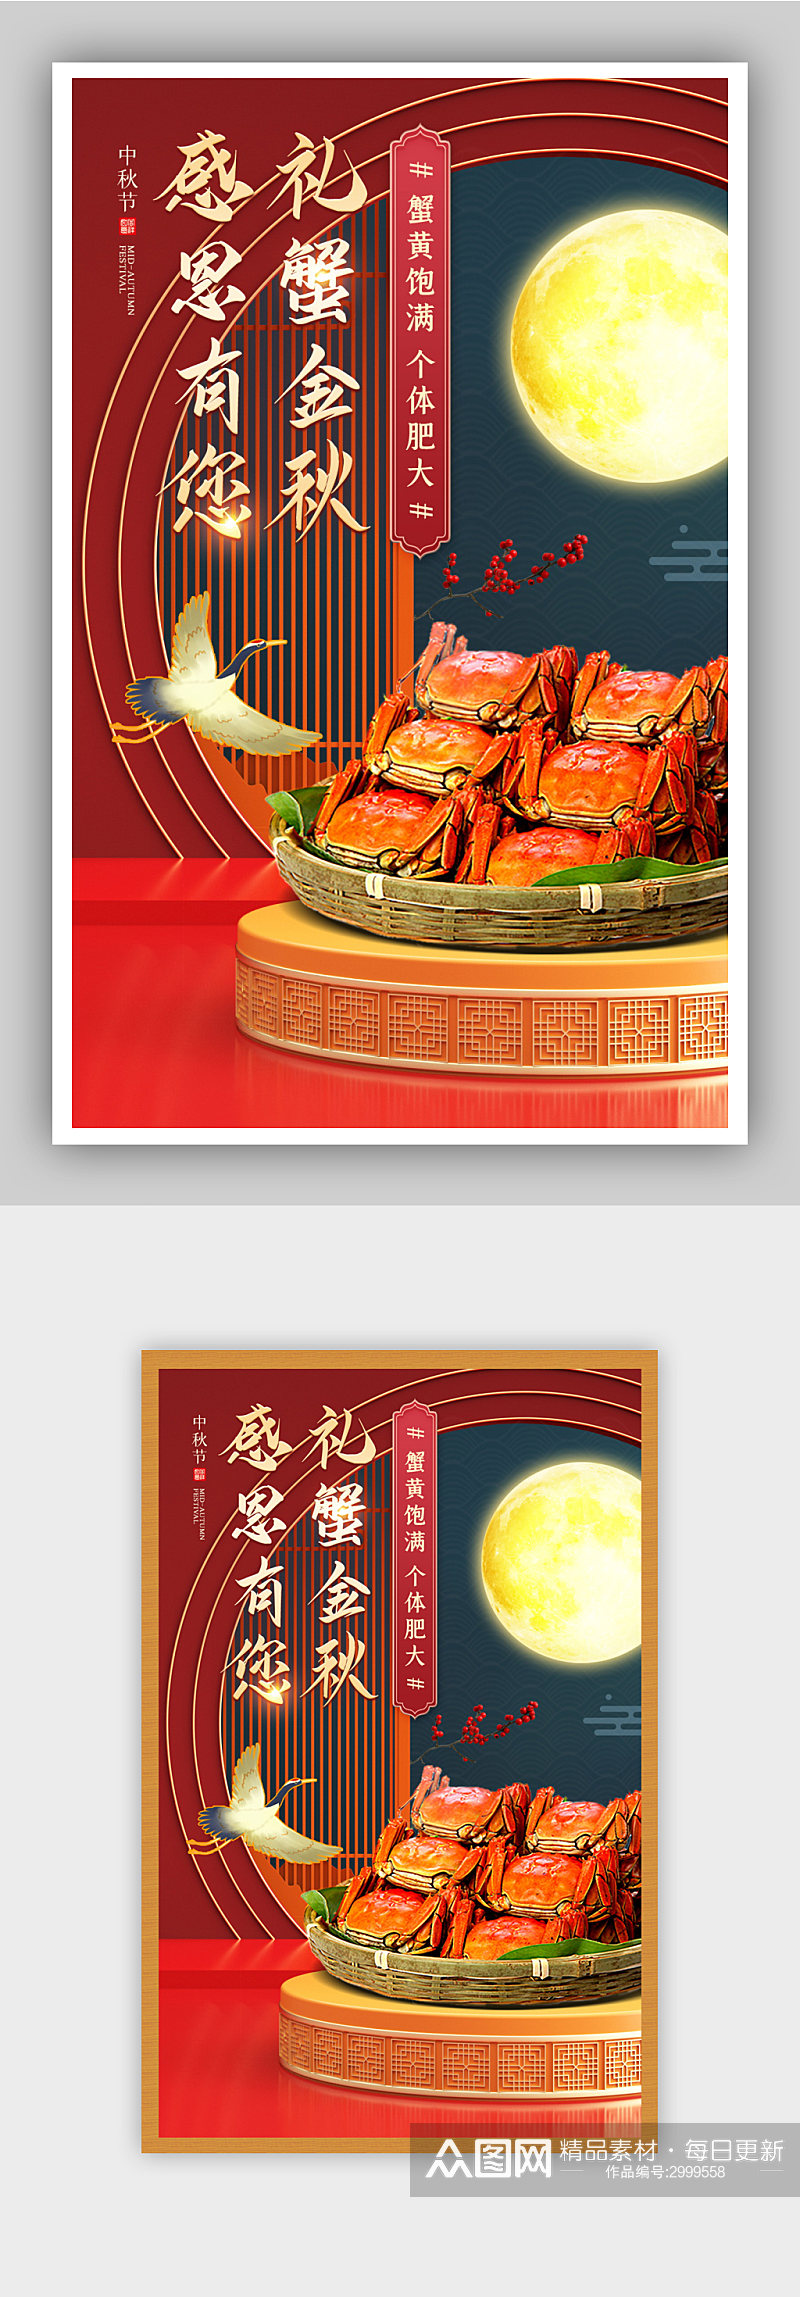 中秋节红色喜庆风螃蟹促销电商活动海报素材